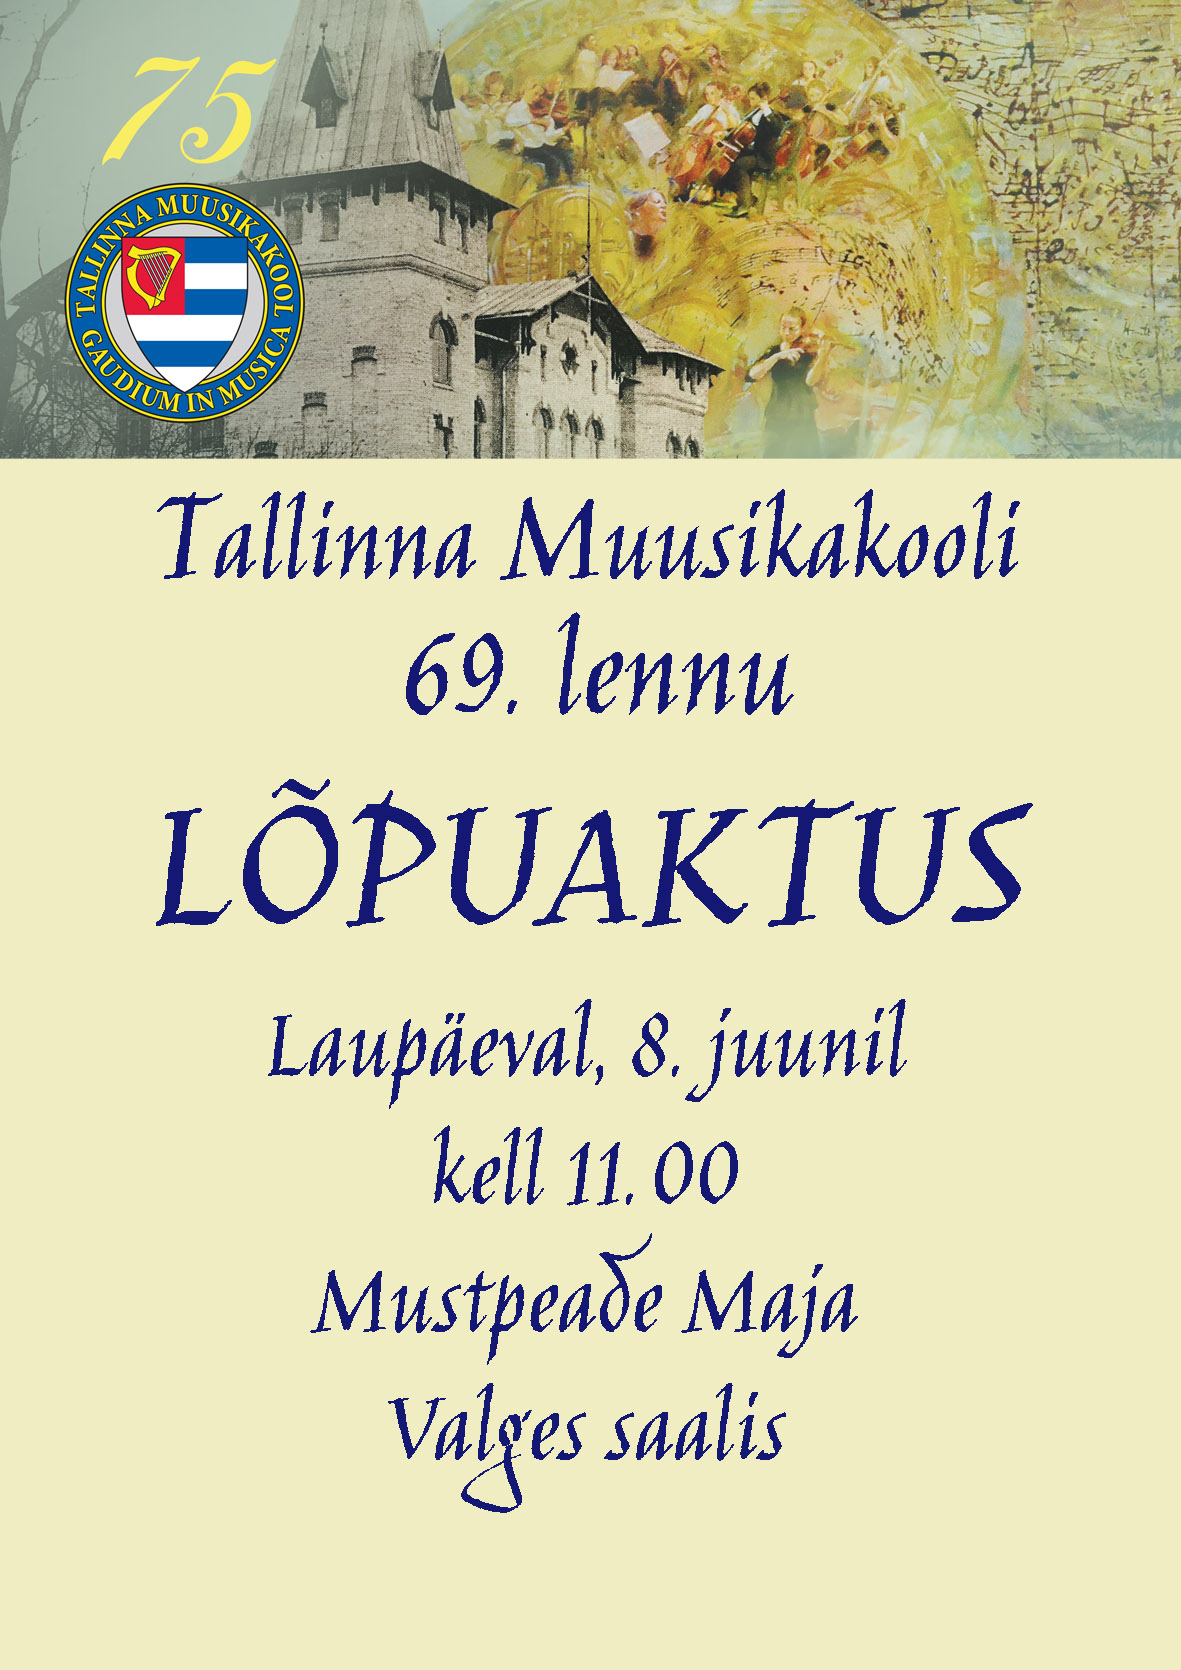 Tallinna Muusikakooli 69. lennu kontsert-aktus